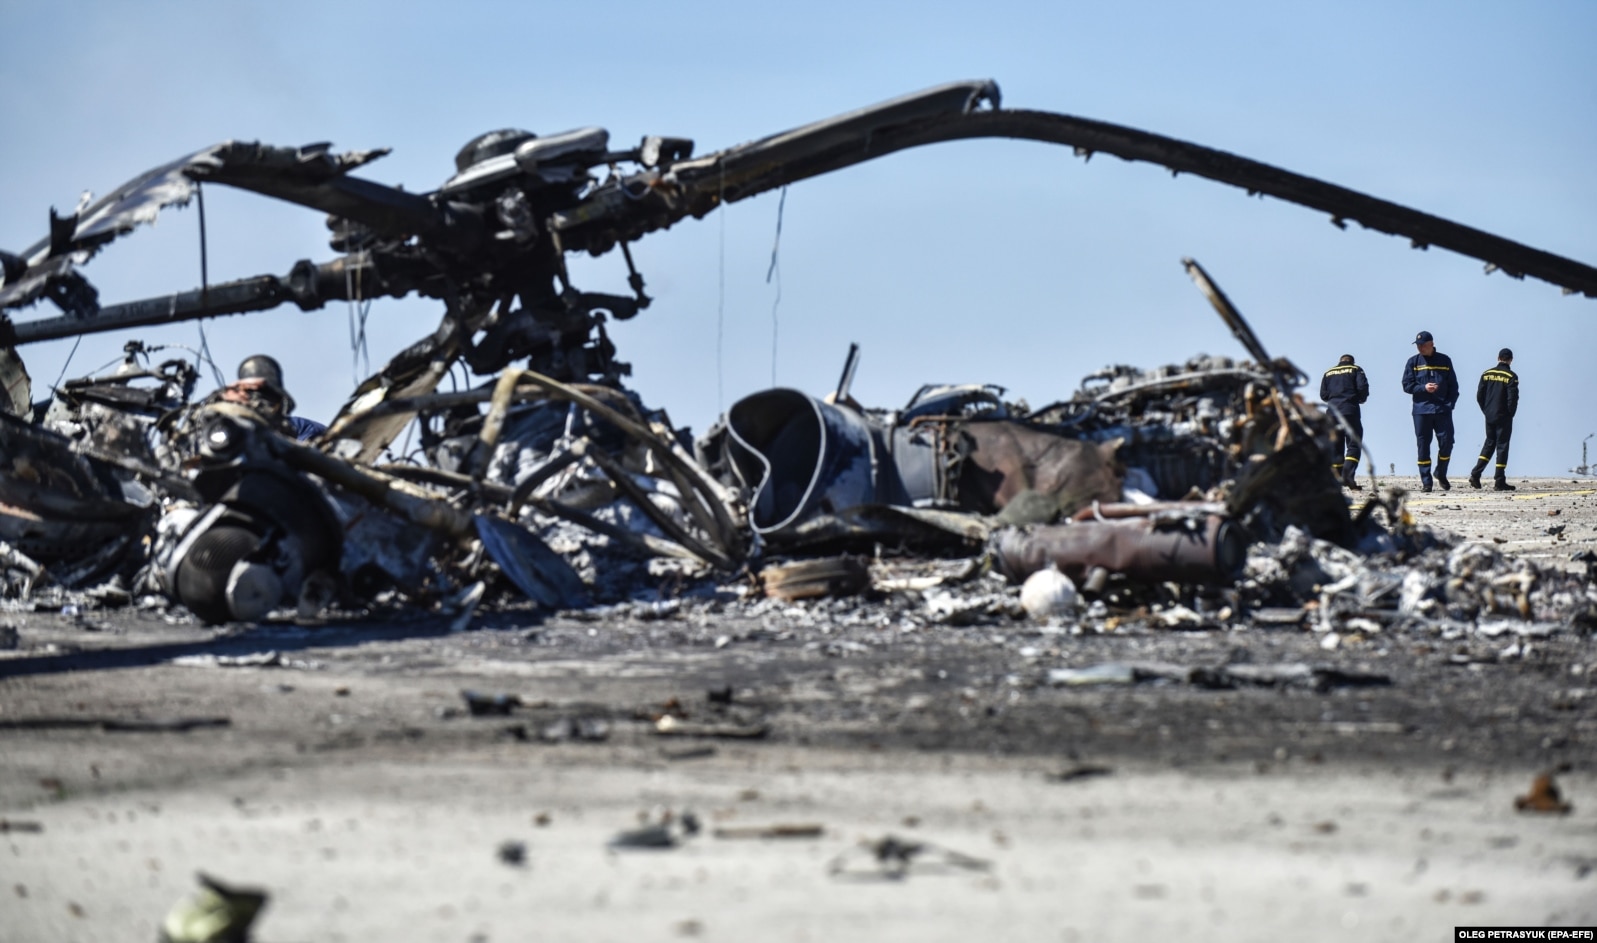 Залишки знищеного російського гелікоптера на аеродромі в Гостомелі на Київщині